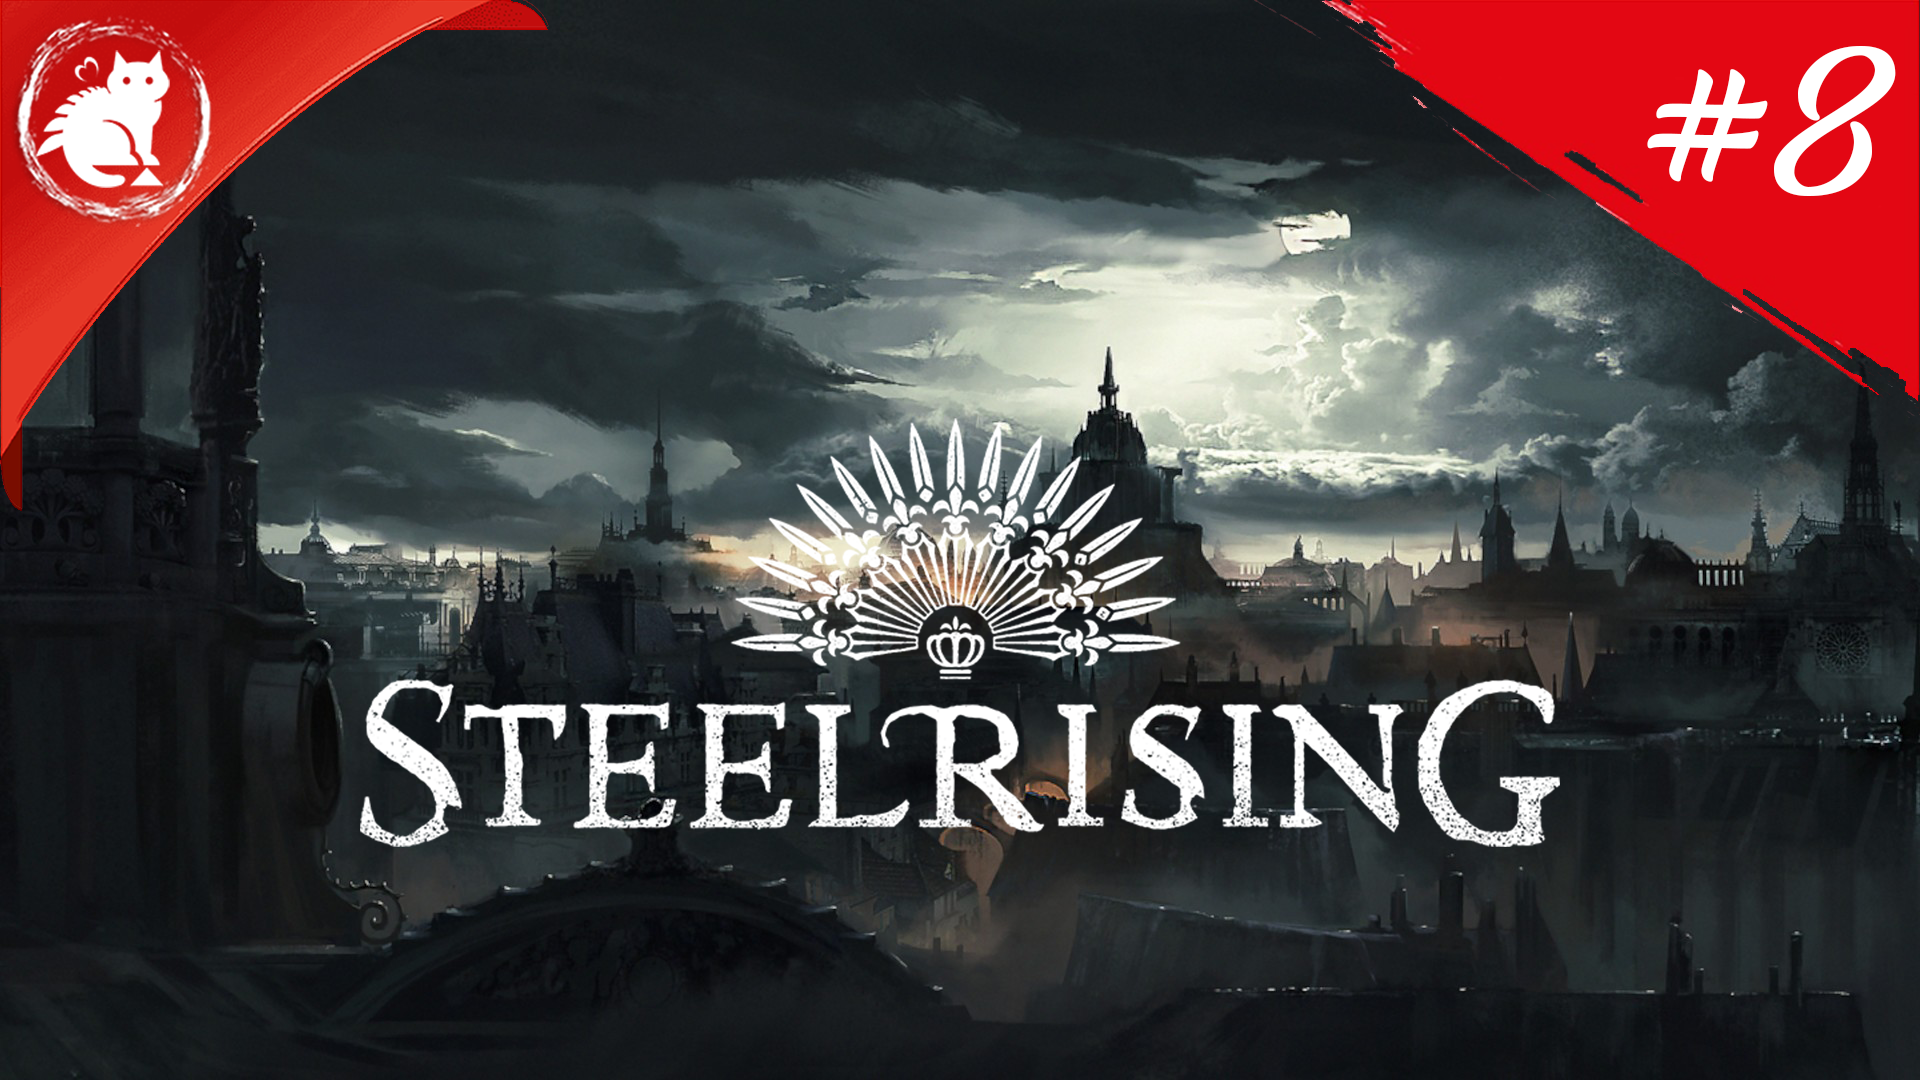 ★ Steelrising ★ - [#8]